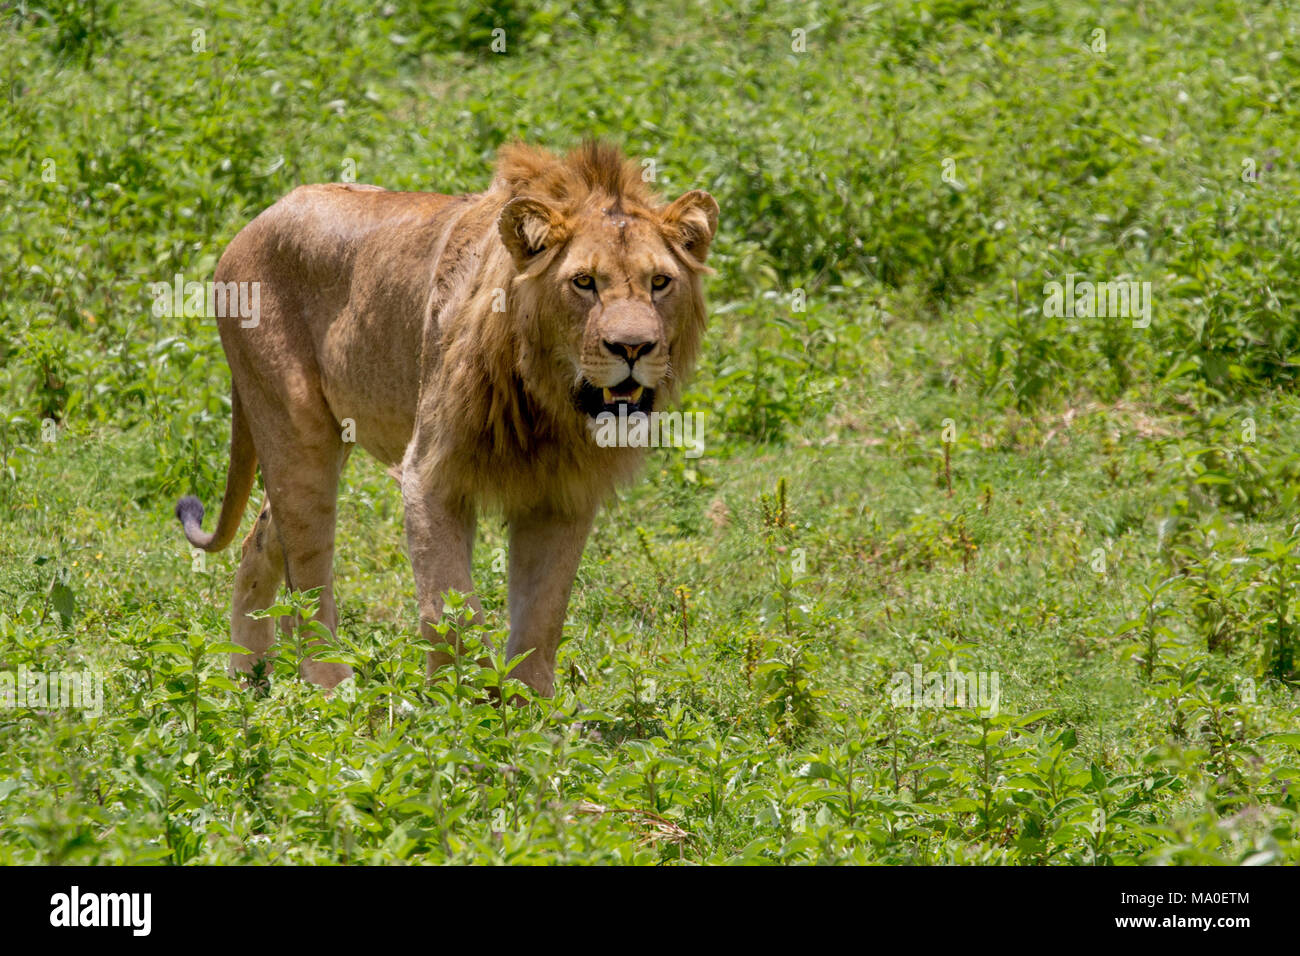 Maschio di leone con bocca aperta nella prateria verde Foto Stock